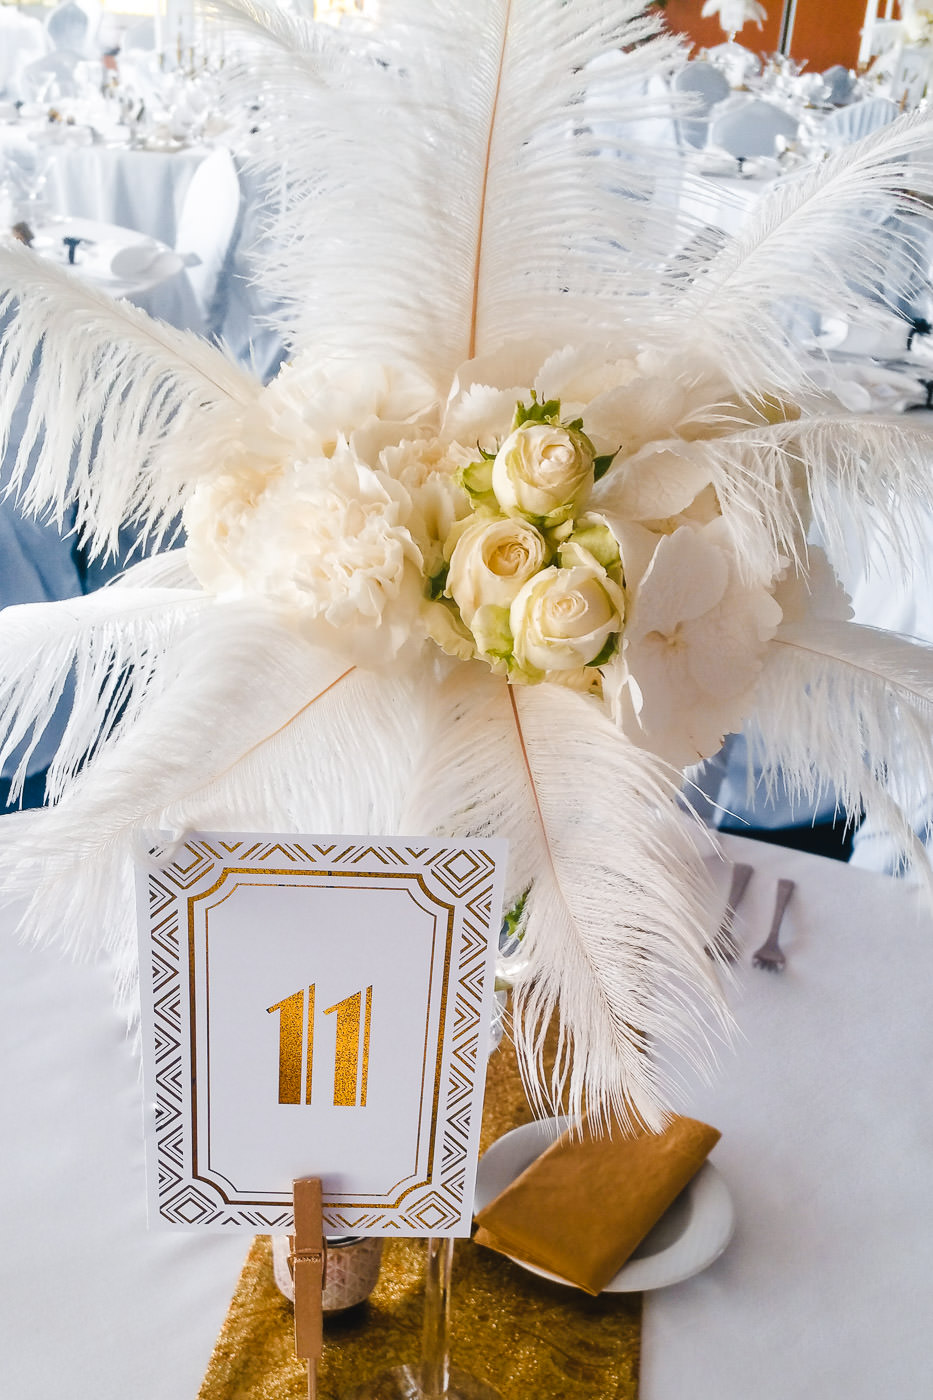 Susan&Sis decor – svadobna vyzdoba, dekorovanie- svadba na styl Great Gatsby – Velky Gatsby- biela jemna vyzdoba s pierkami, biele ruze, vela kvetov, stylova svadba